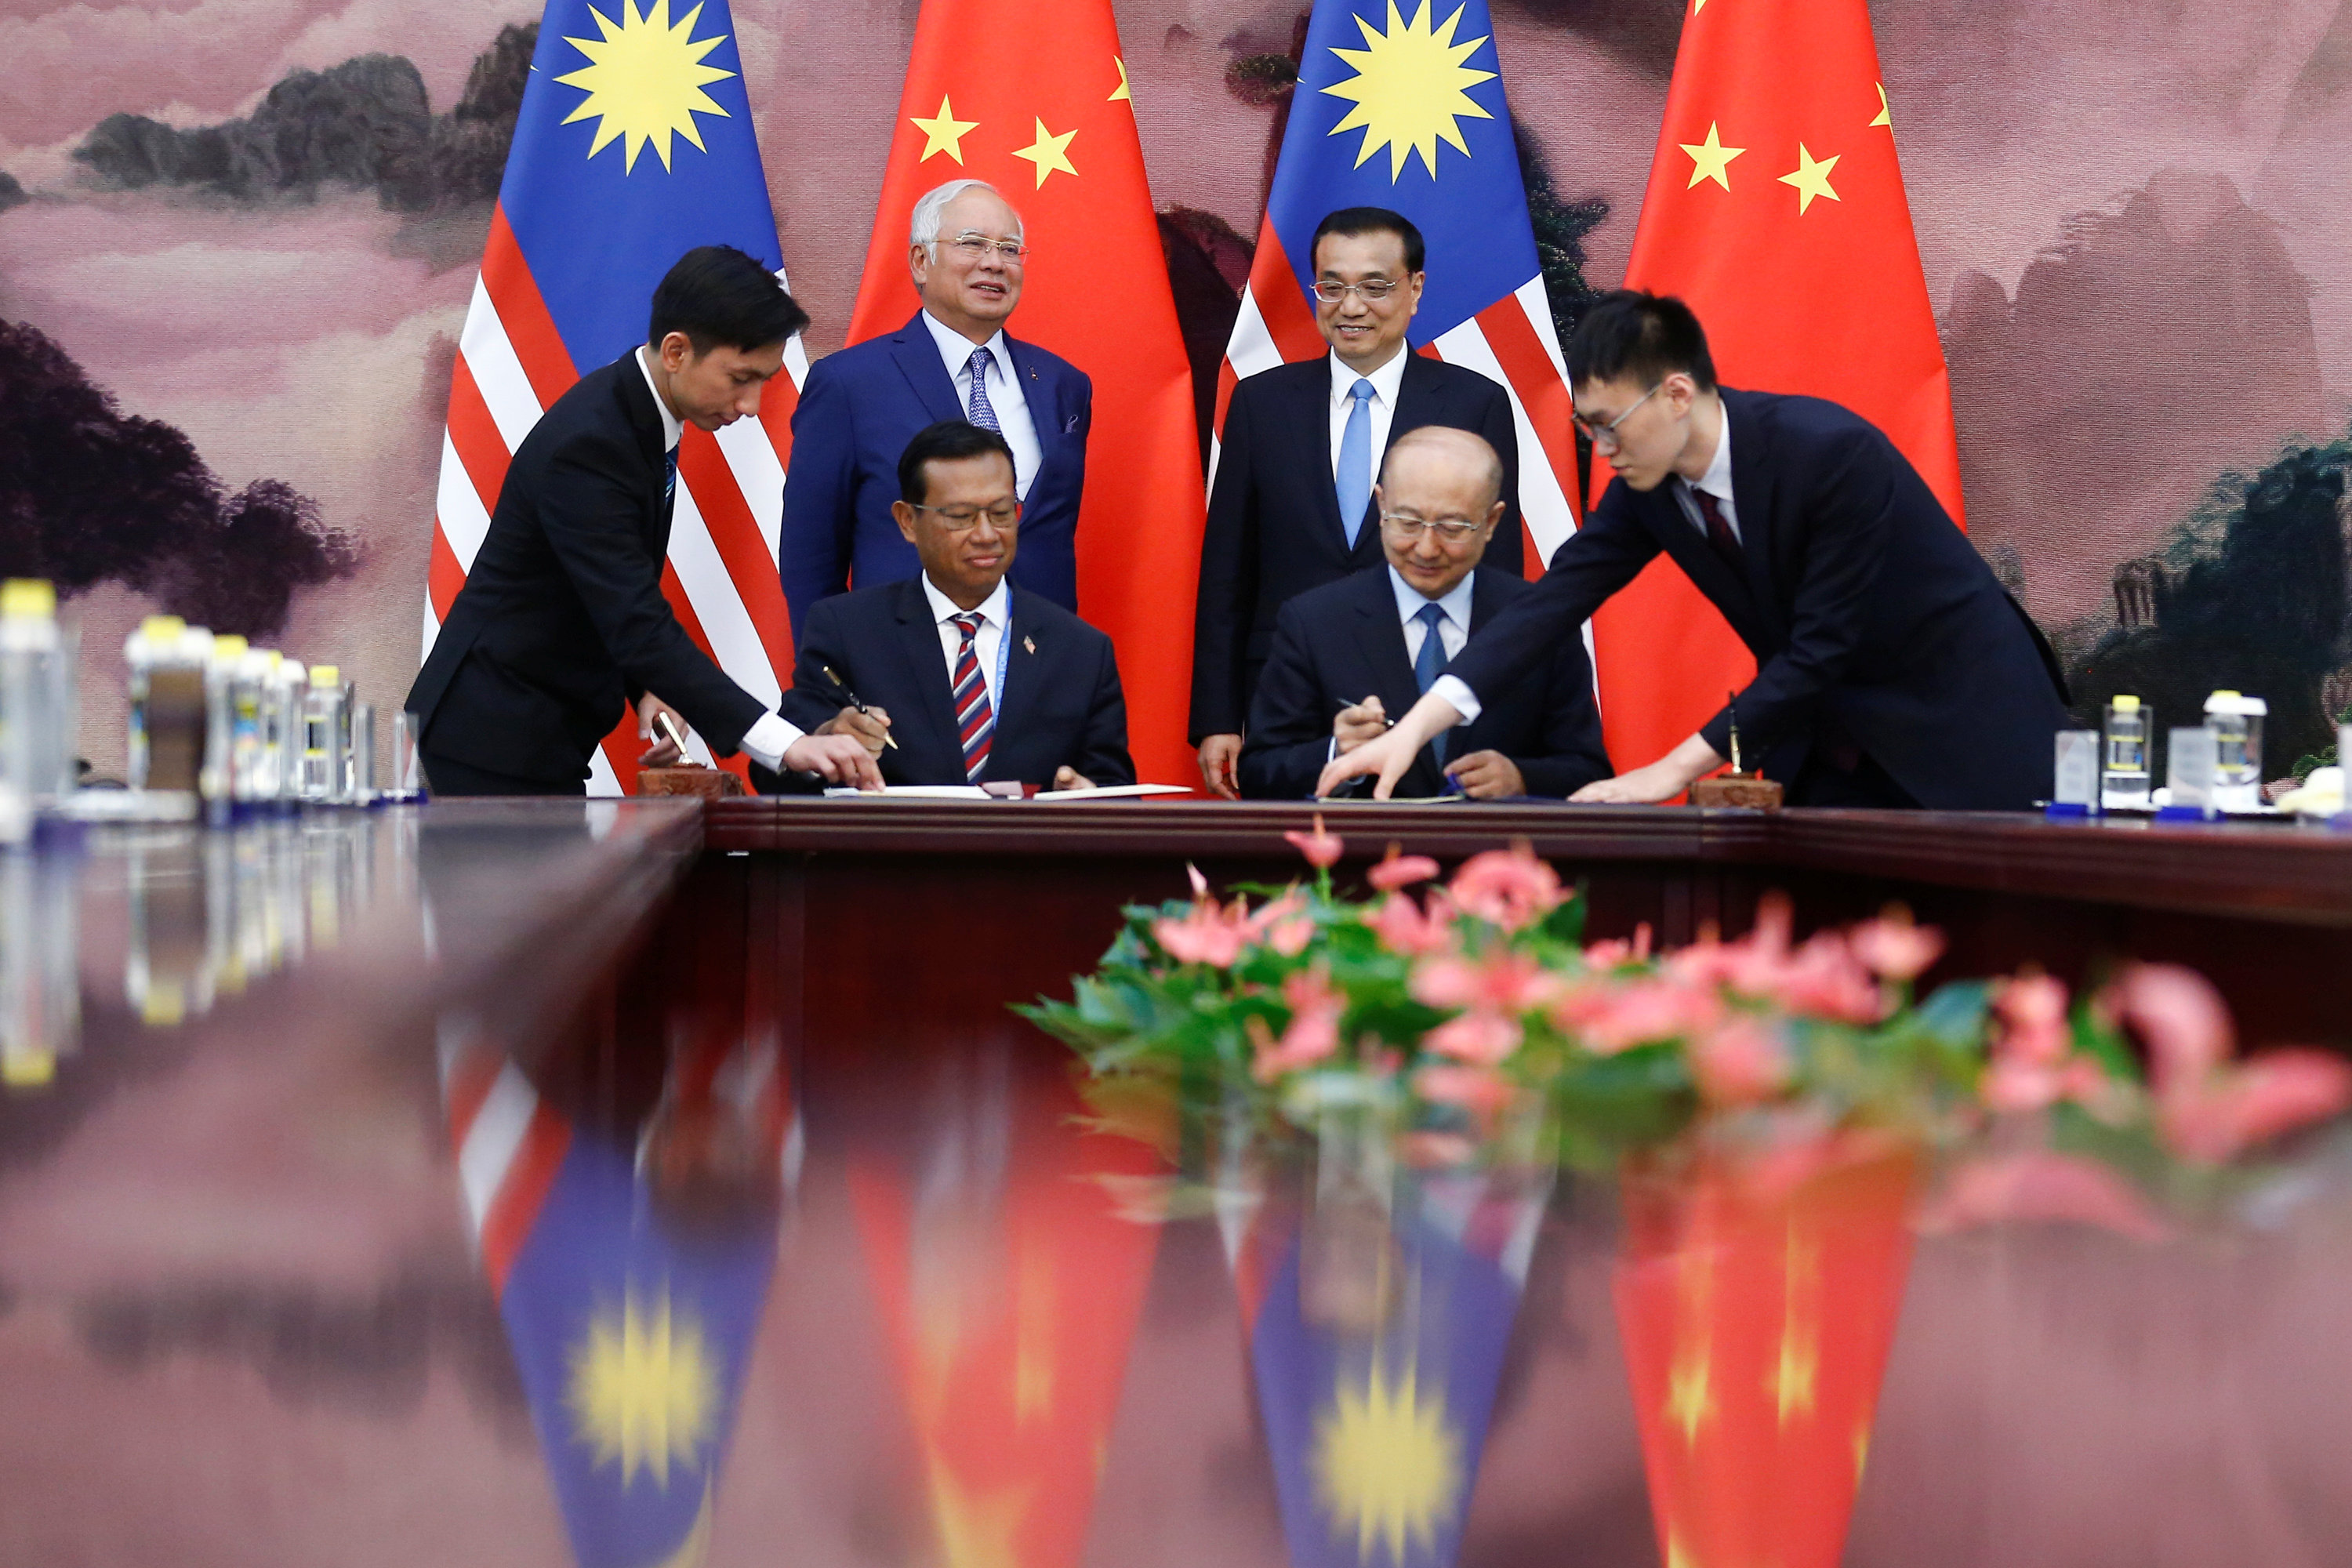 رئيس مجلس الدولة الصينى ورئيس الوزراء الماليزى يشهدان توقيع بين البلدين